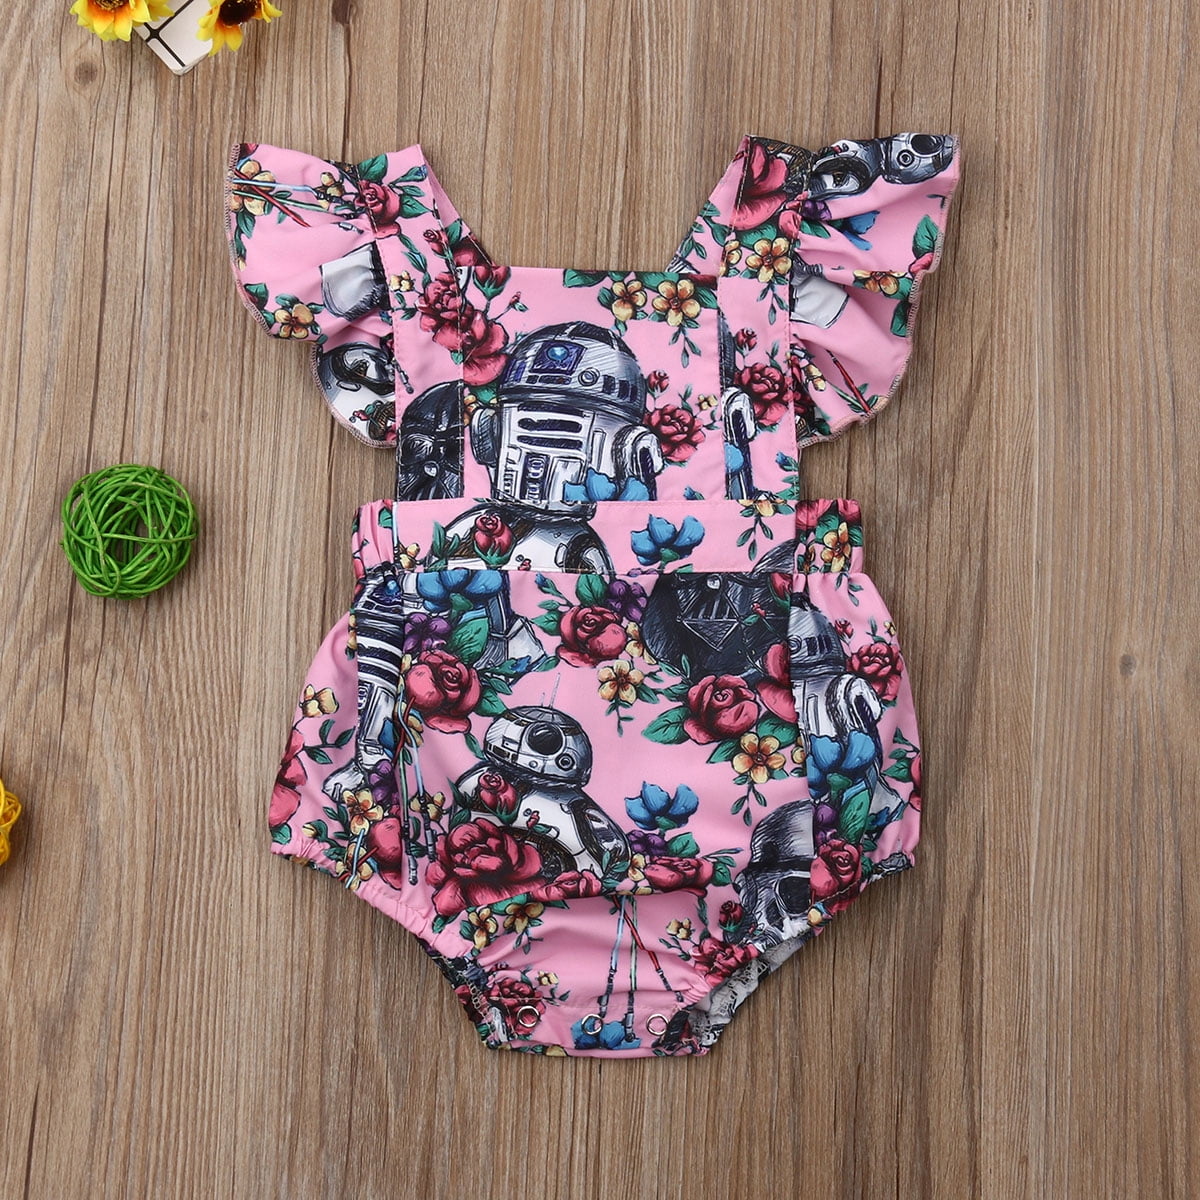 poeder Lyrisch opladen Nokiwiqis Newborn Baby Girls Floral Star Wars Print Romper Jumpsuit Outfit  Sunsuit Clothes - Walmart.com